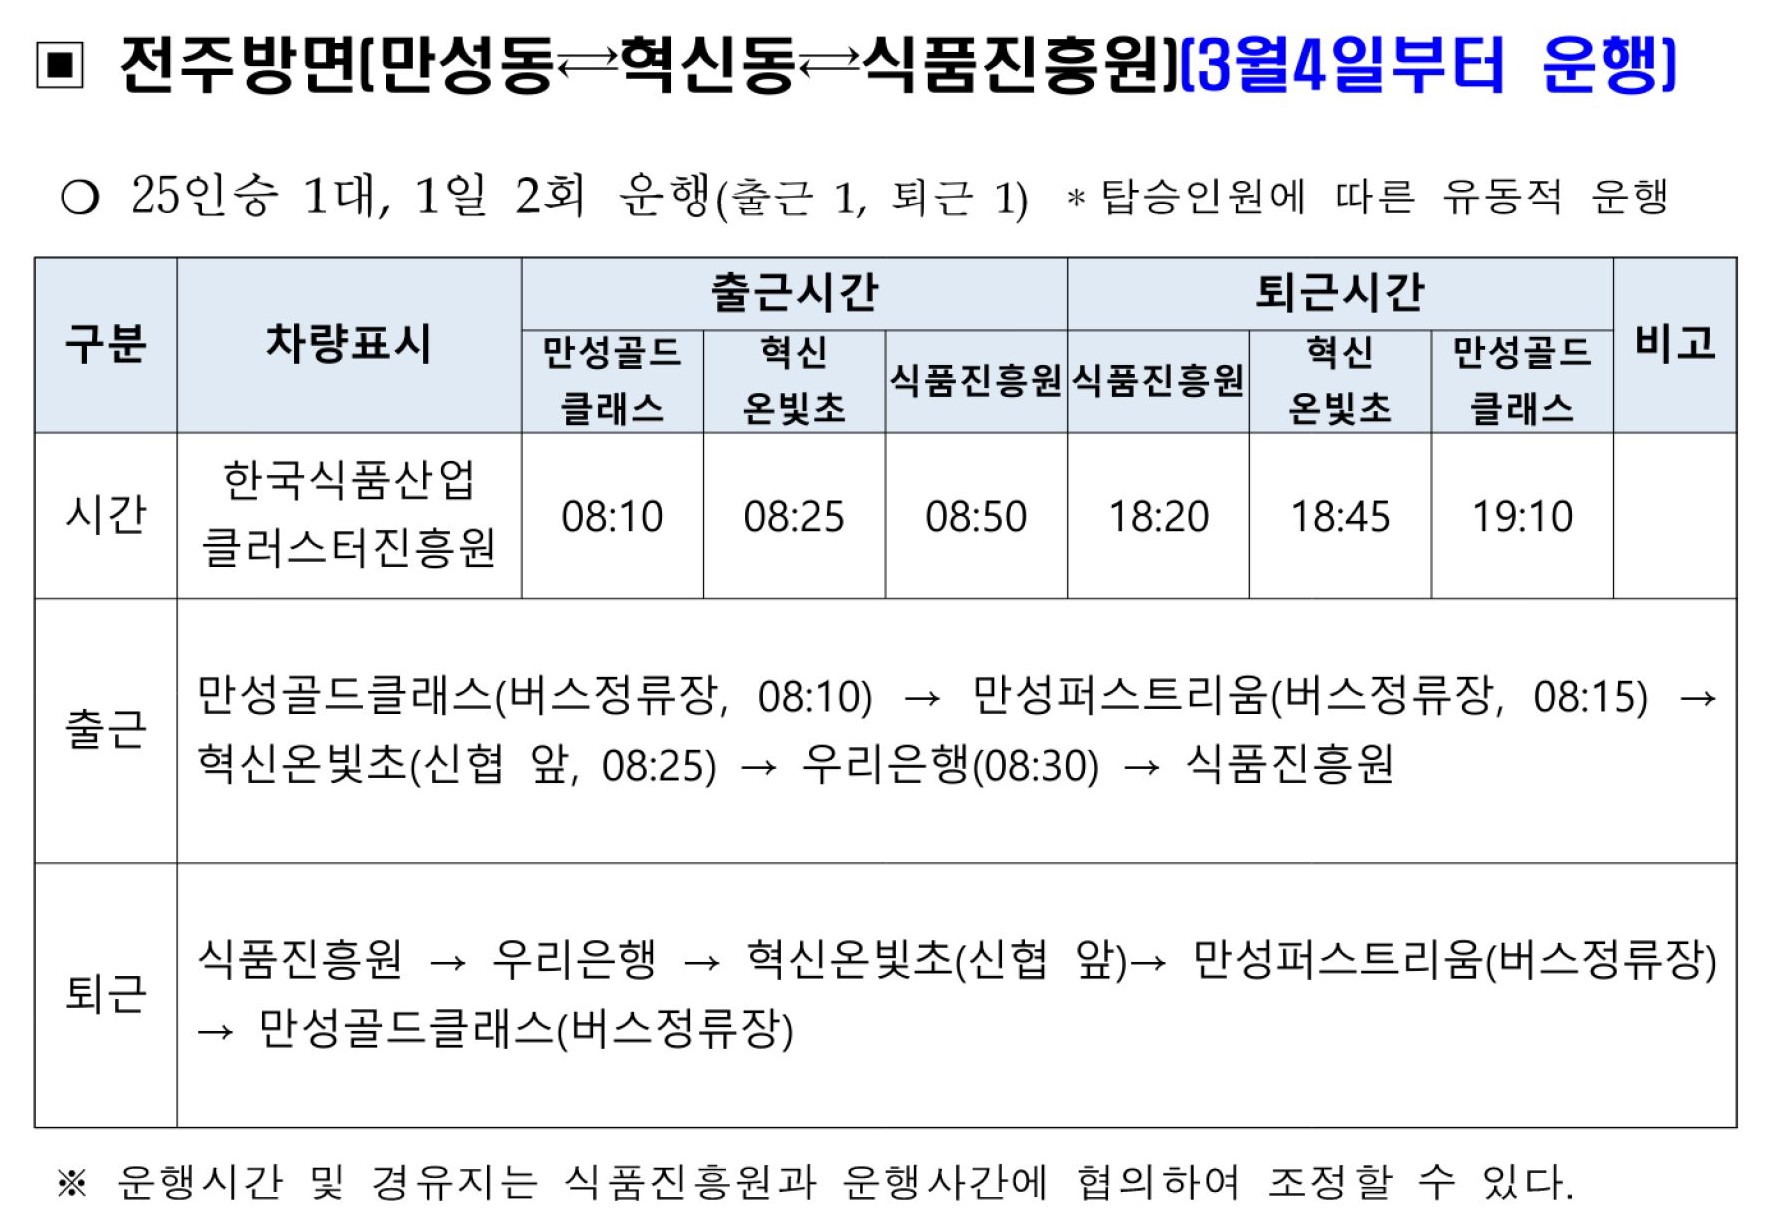 식품진흥원 운영 통근버스 노선 및 운행시간 - 자세한 내용은 첨부파일에서 확인